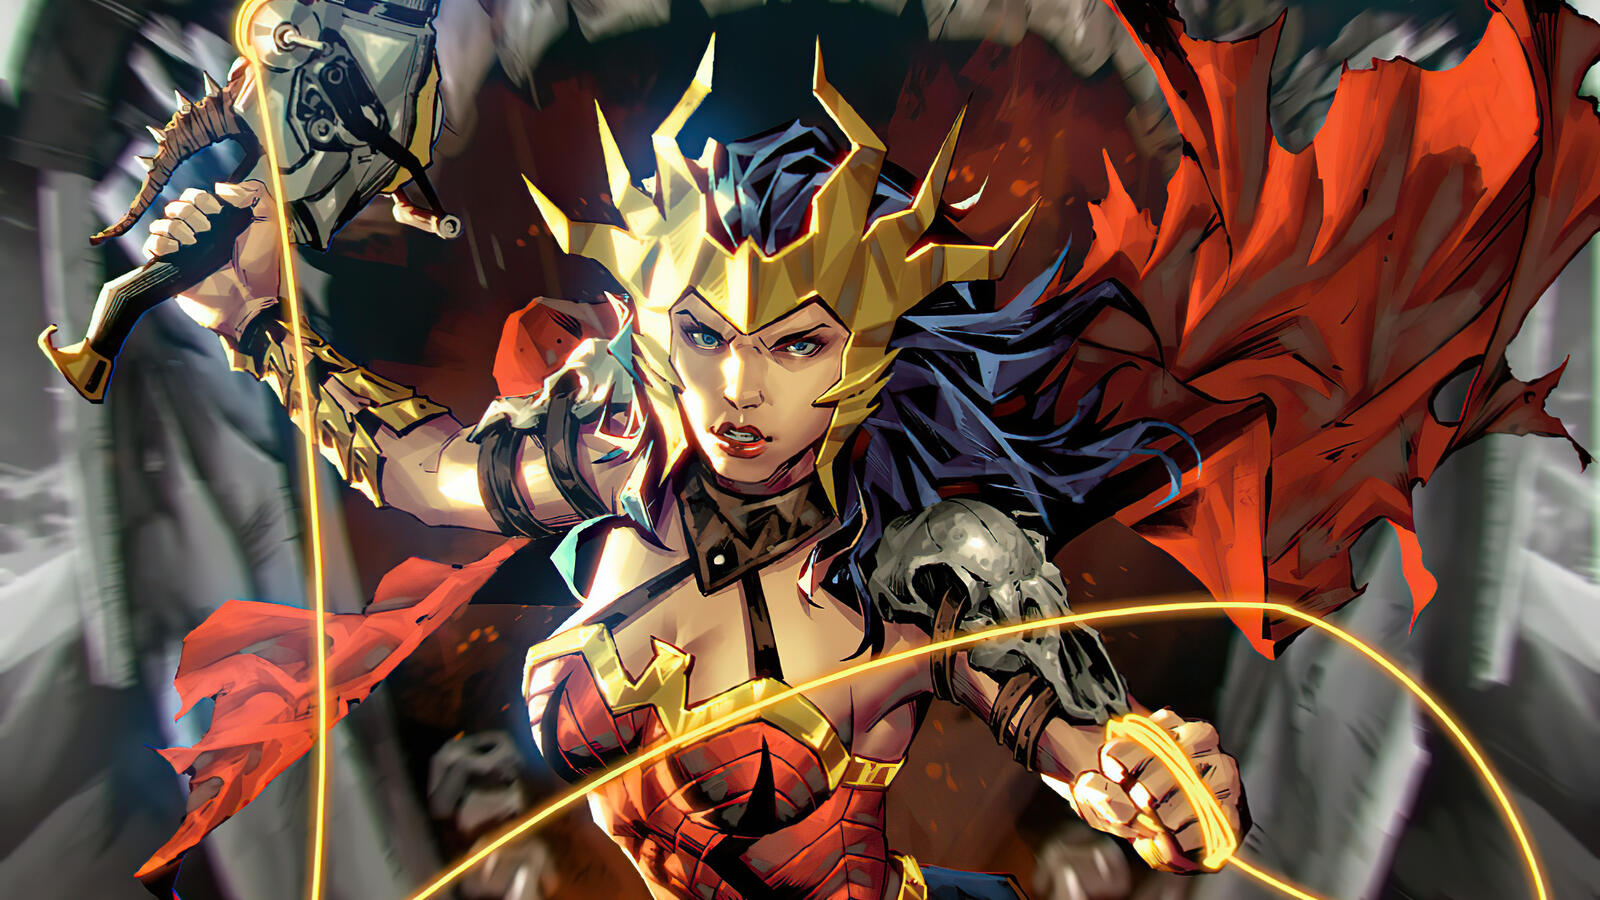 Wallpapers Wonder woman sword super heroes on the desktop